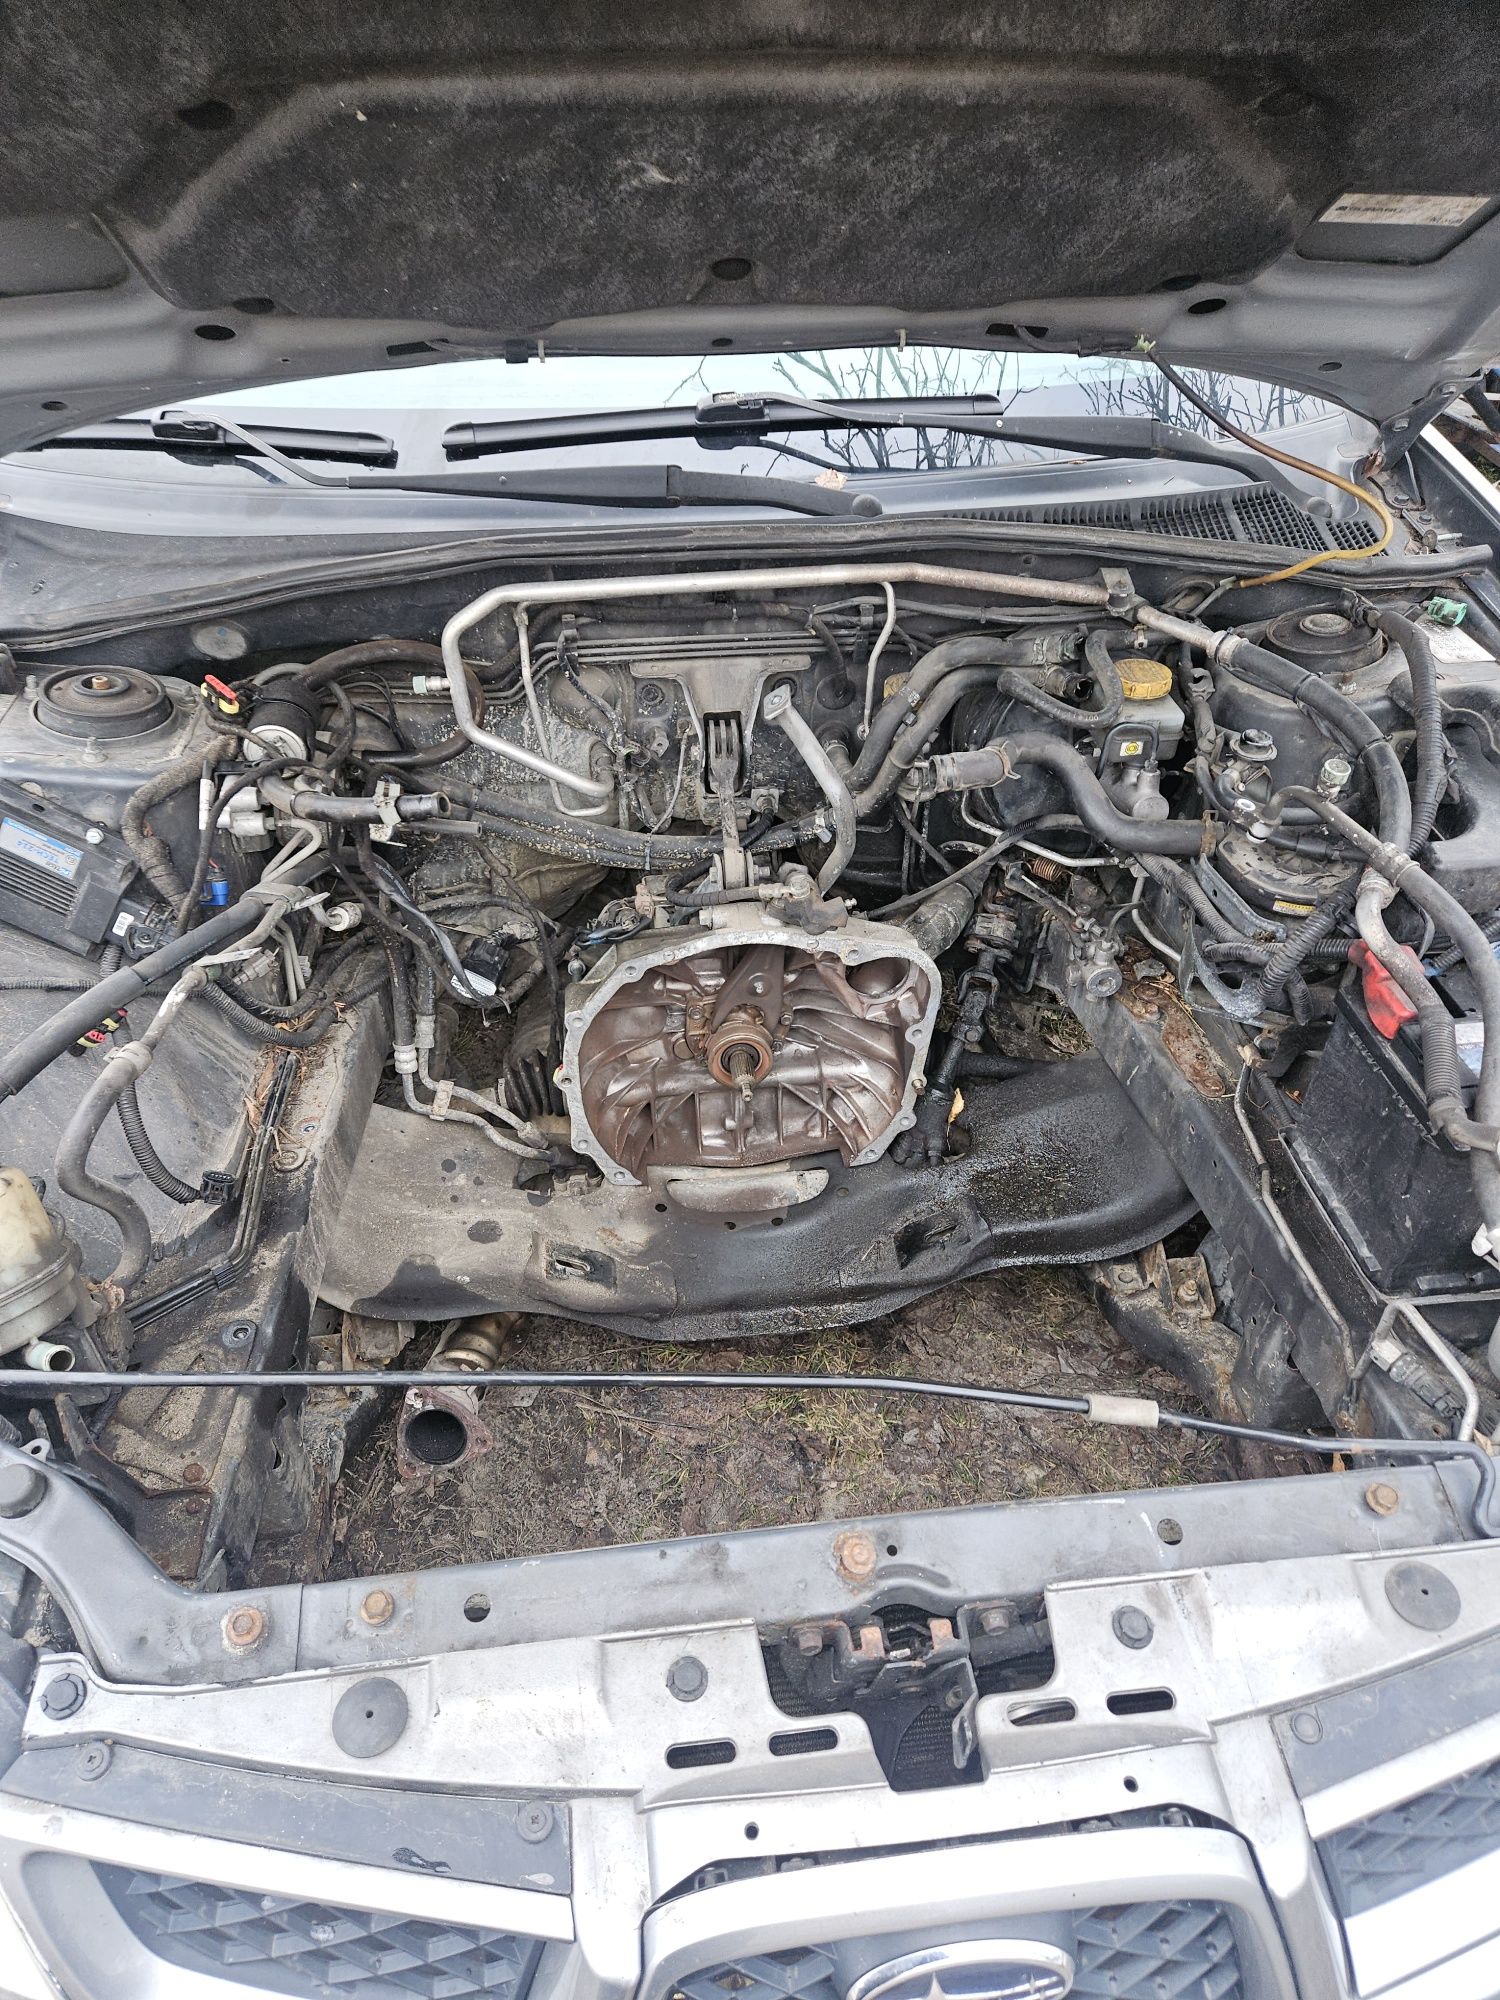 Subaru impreza uszkodzony silnik